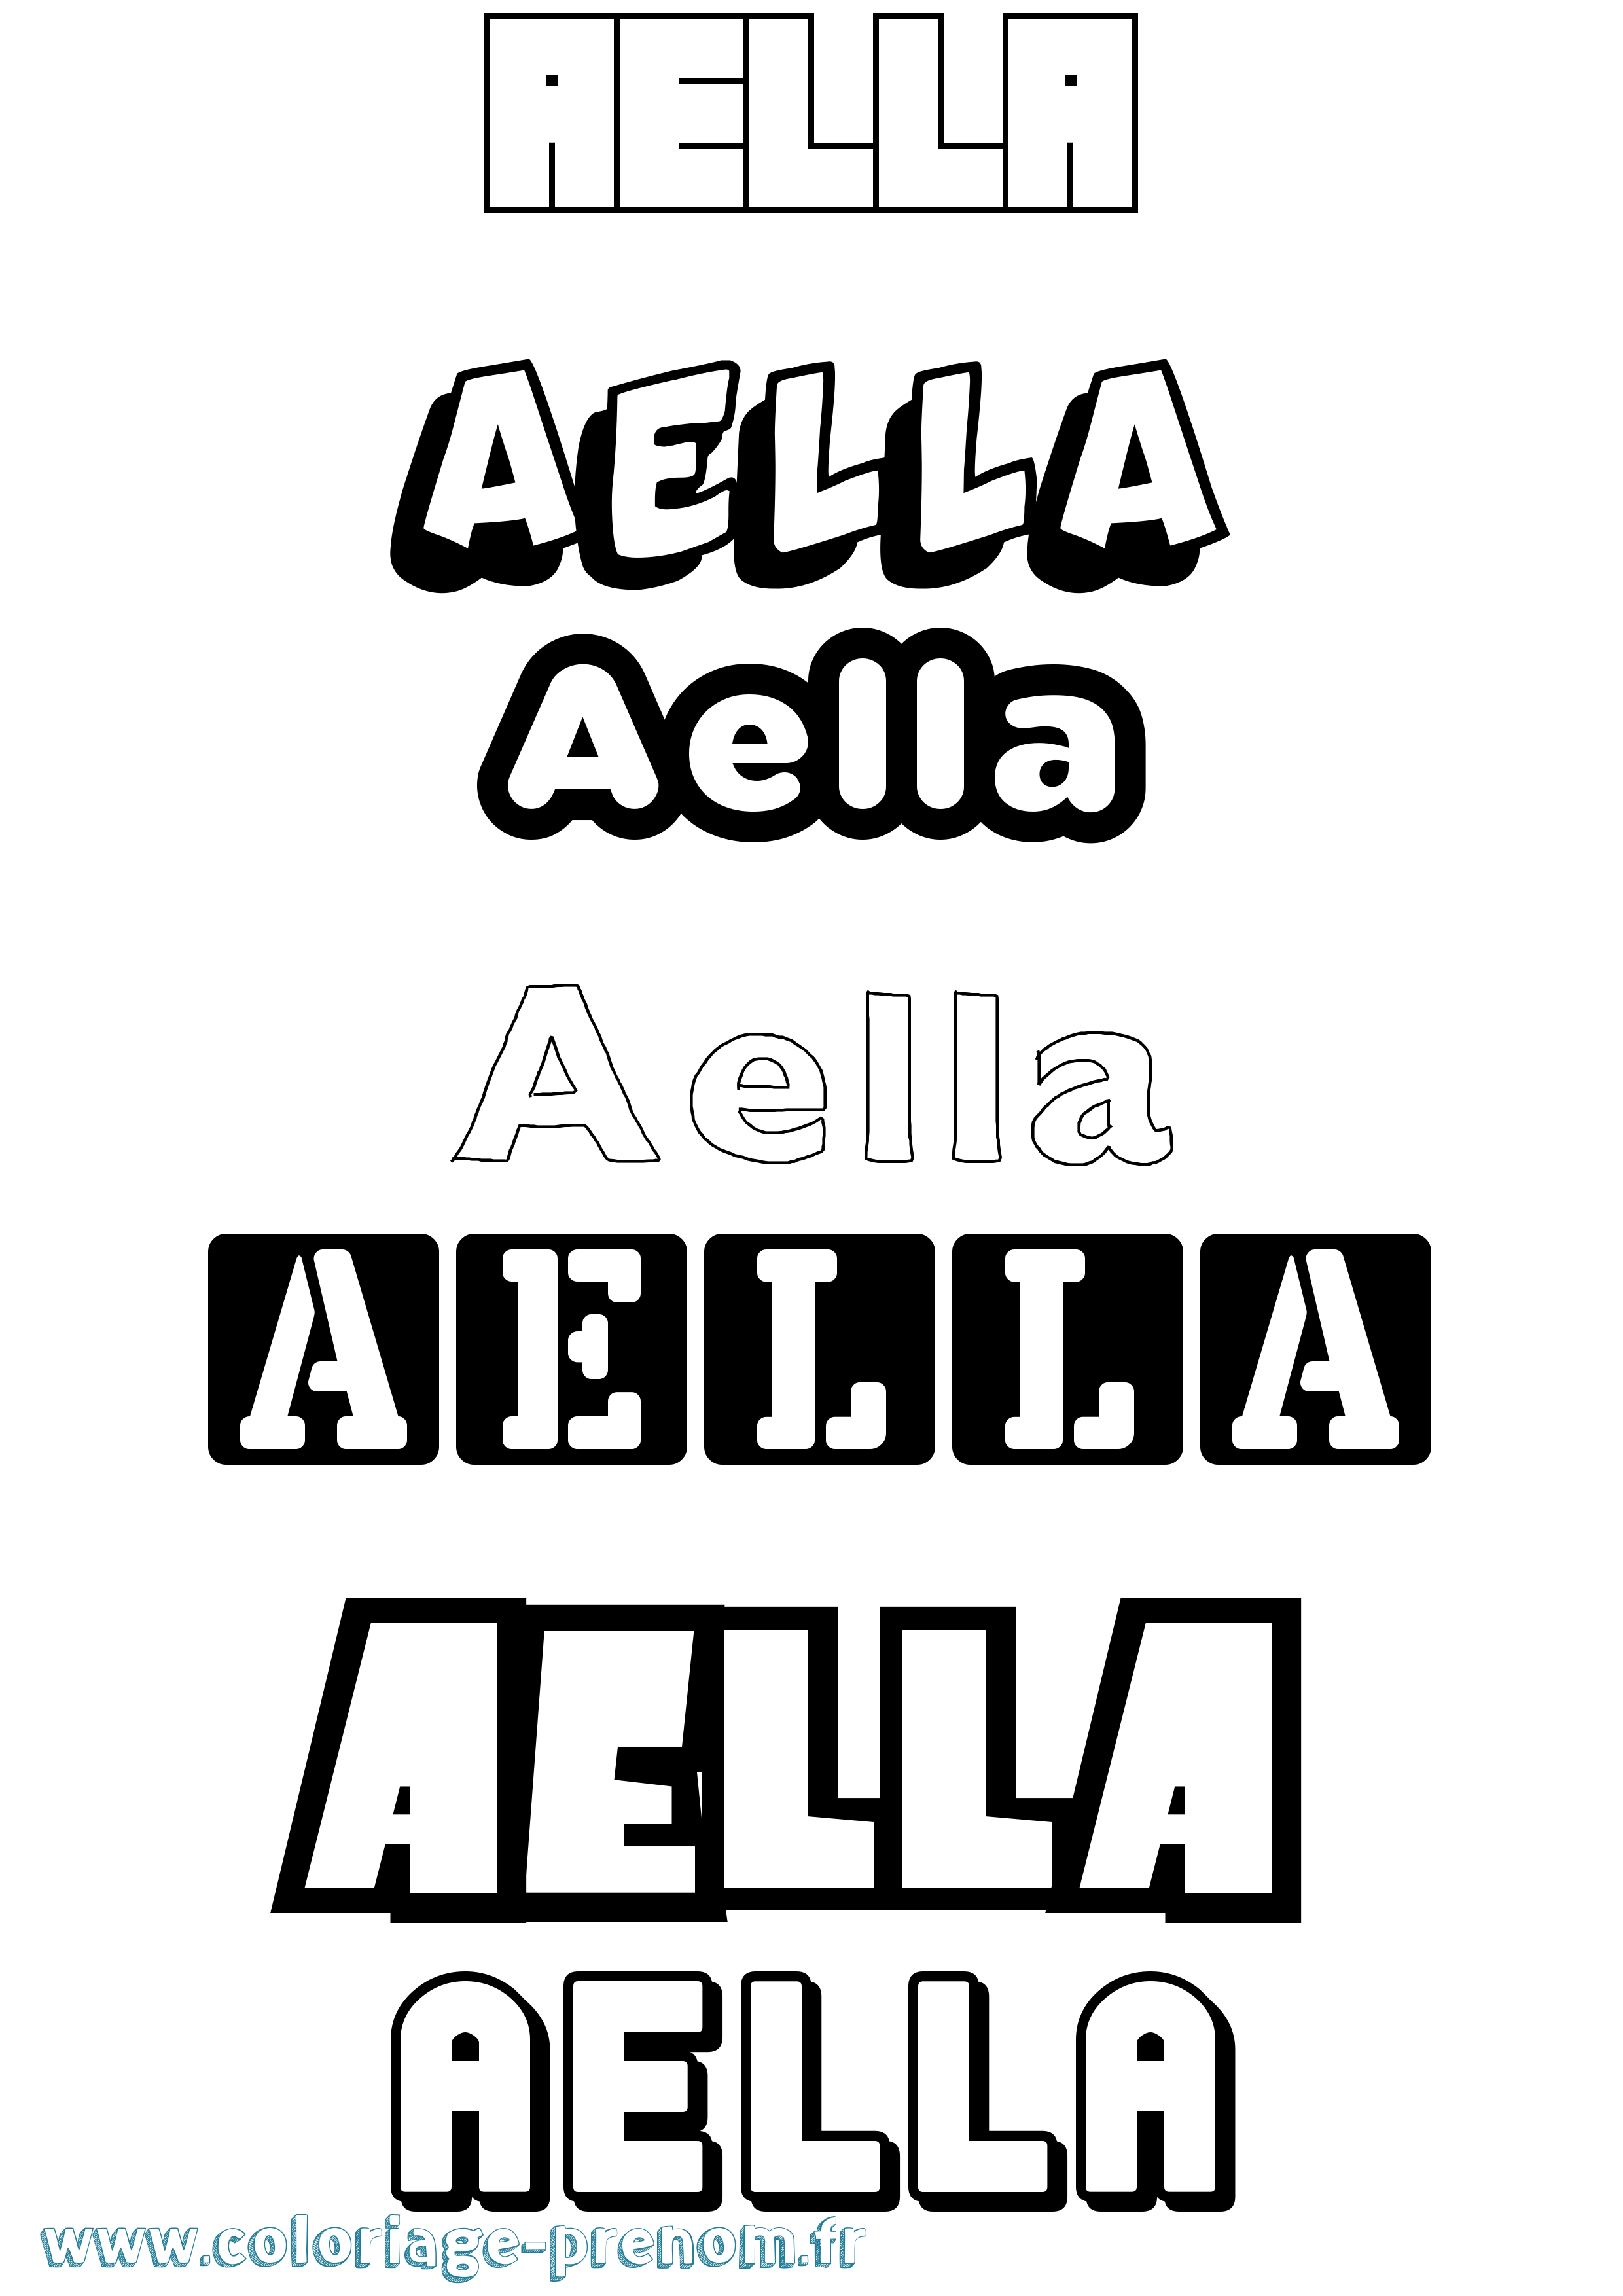 Coloriage prénom Aella Simple